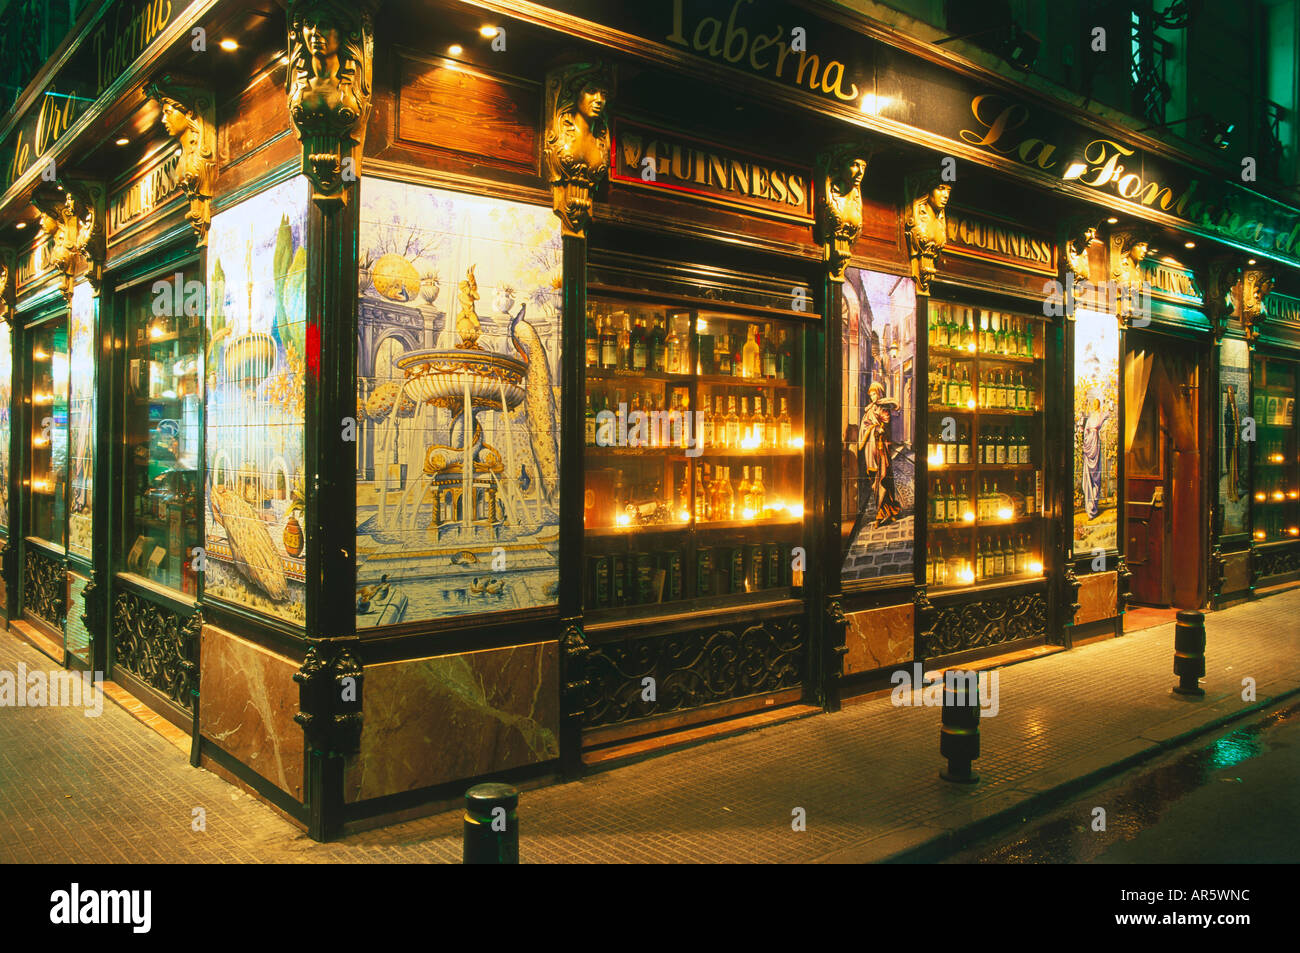 Tavern, pub, La Fontana de Oro, Victoria near Puerta del Sol, Madrid, Castile, Spain Stock Photo